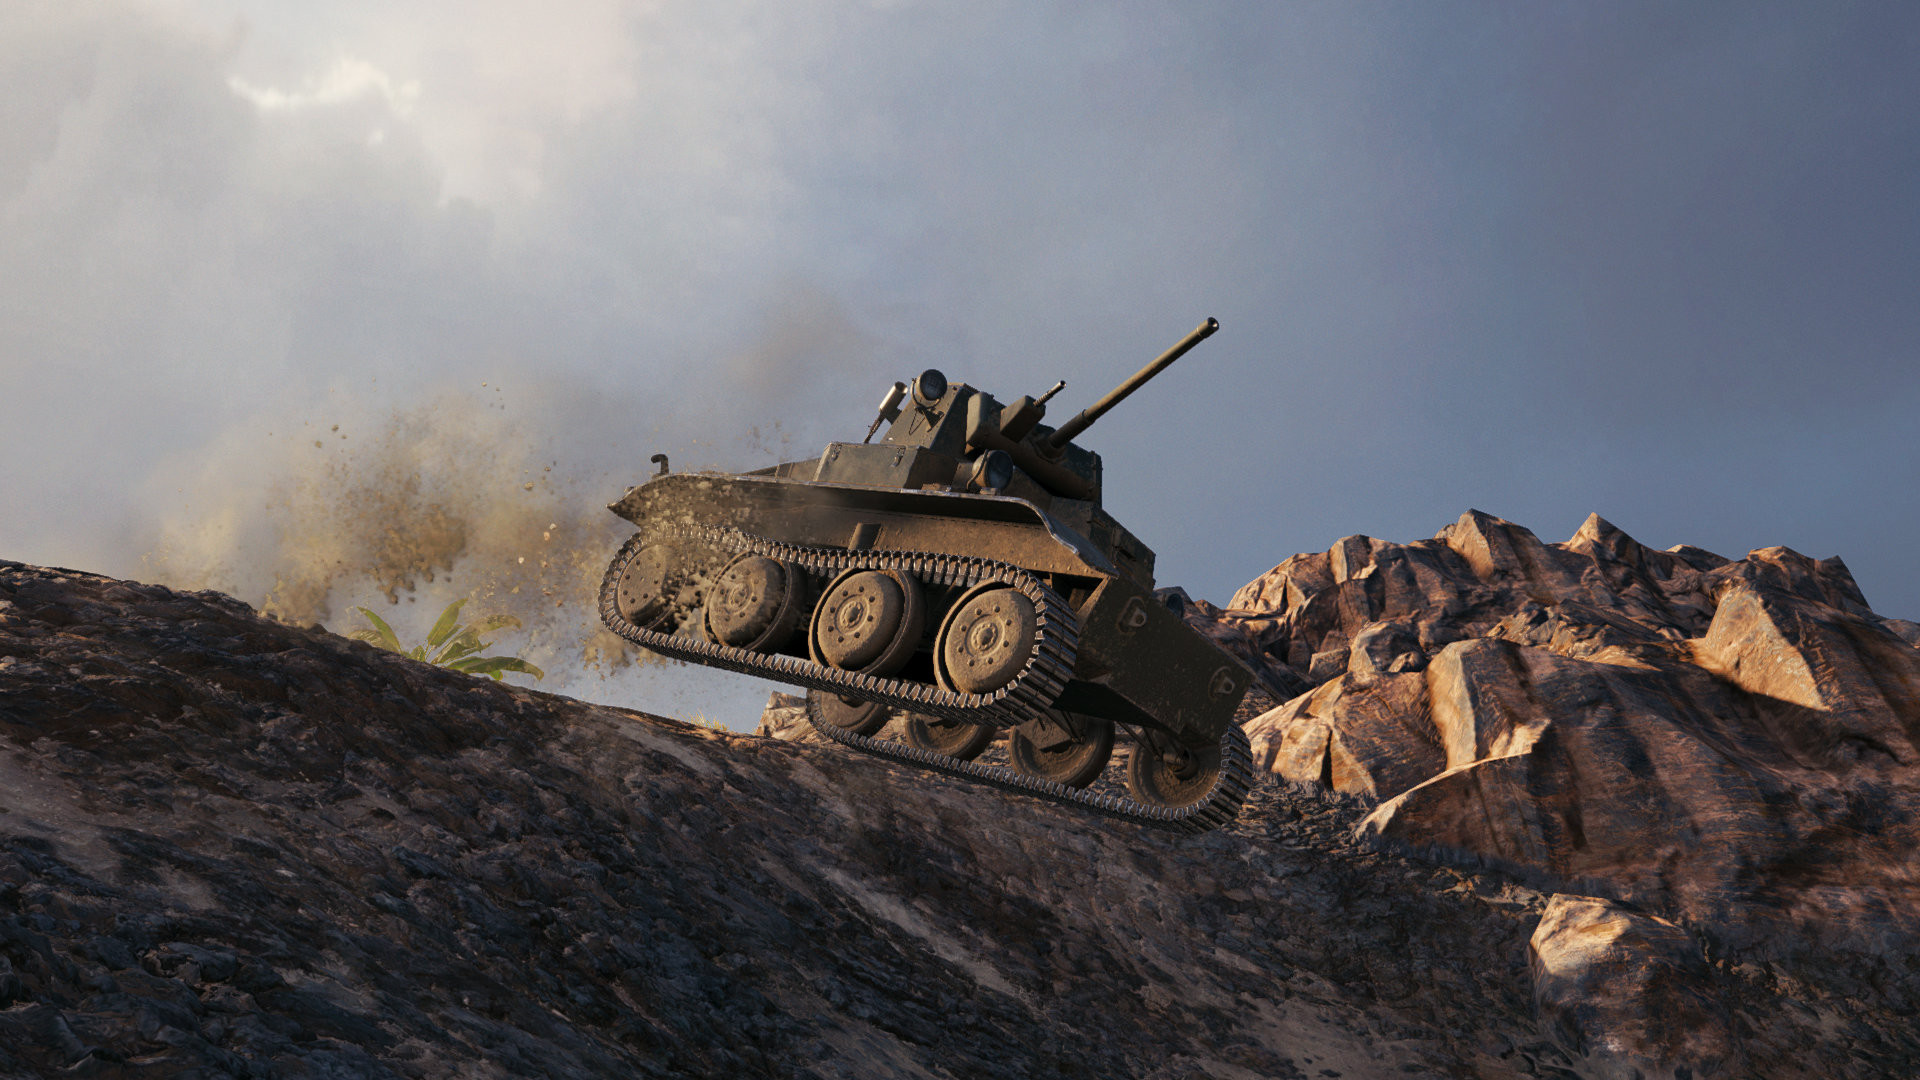 World of Tanks — Premium & Gold: Light Pack on Steam